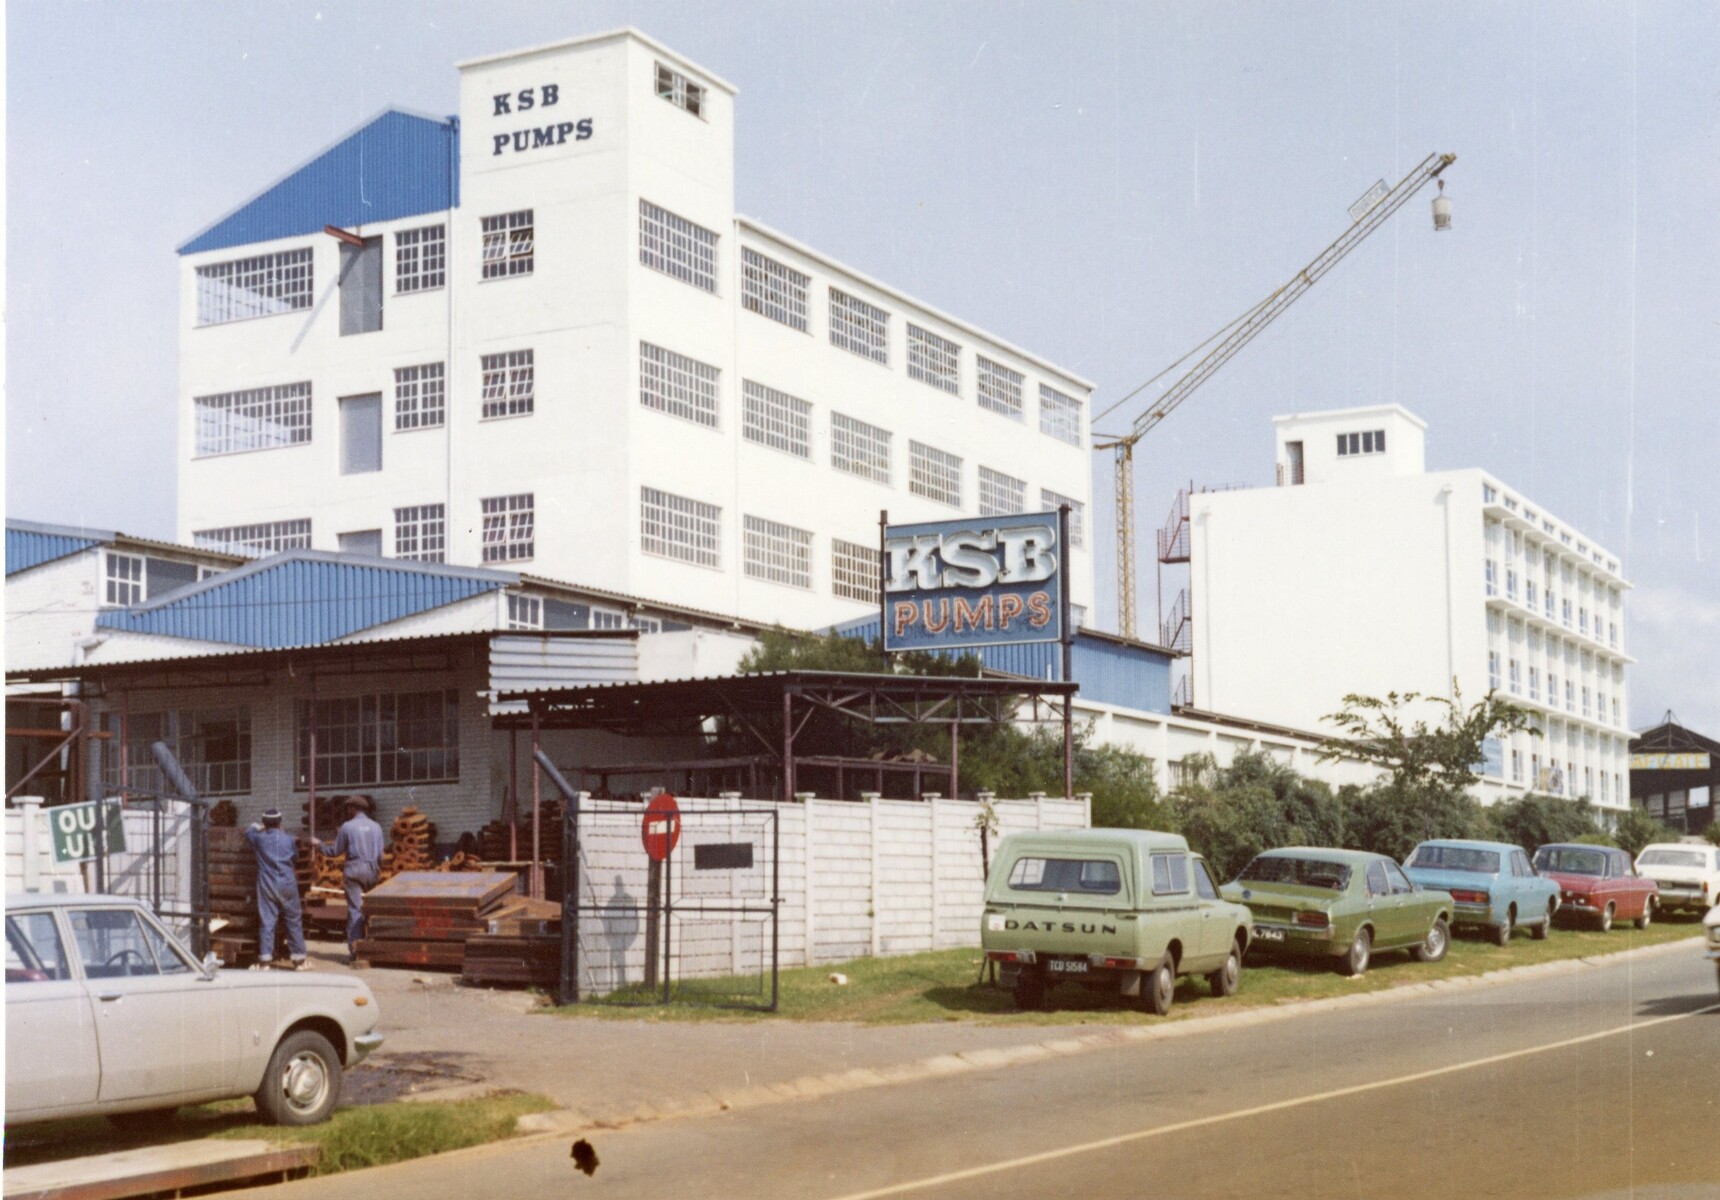 KSB production facility in Germiston near Johannesburg, South Africa